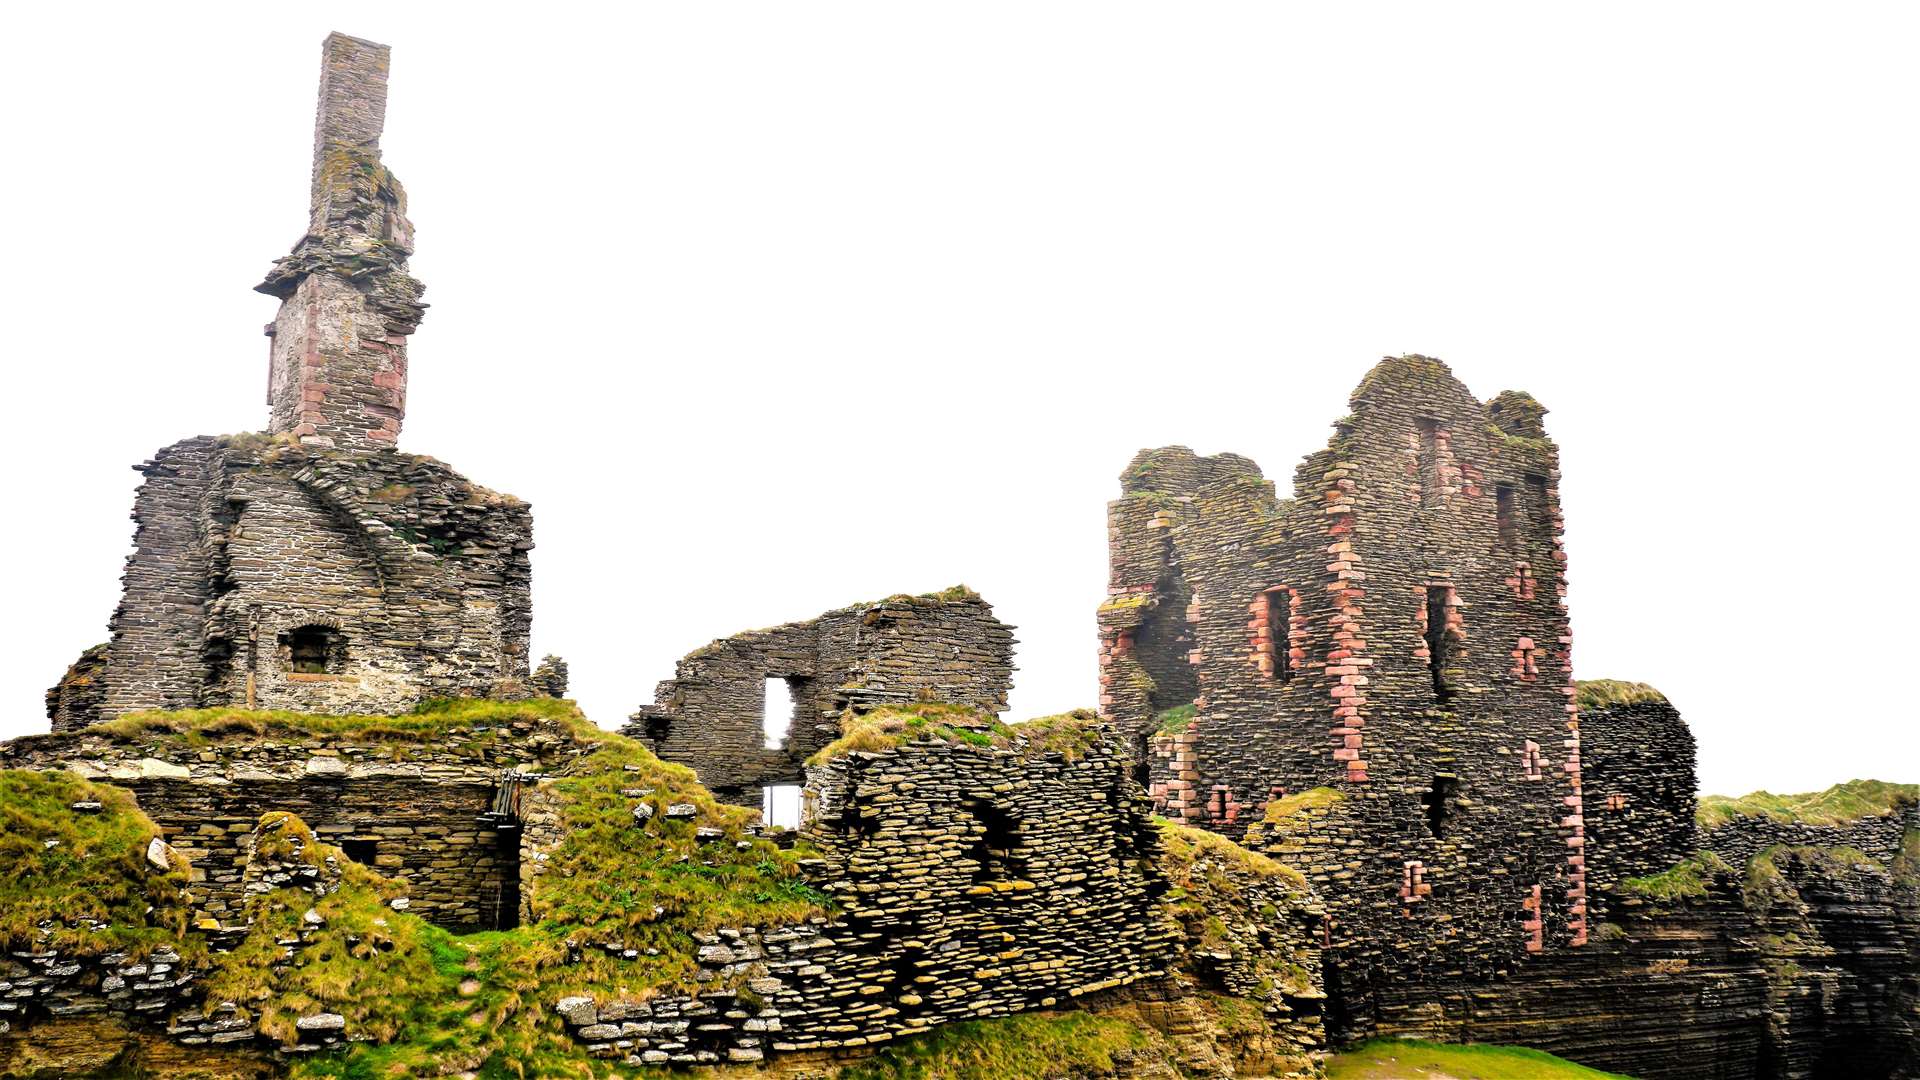 Castle Sinclair-Girnigoe is a top tourist destination in Caithness. Picture: DGS